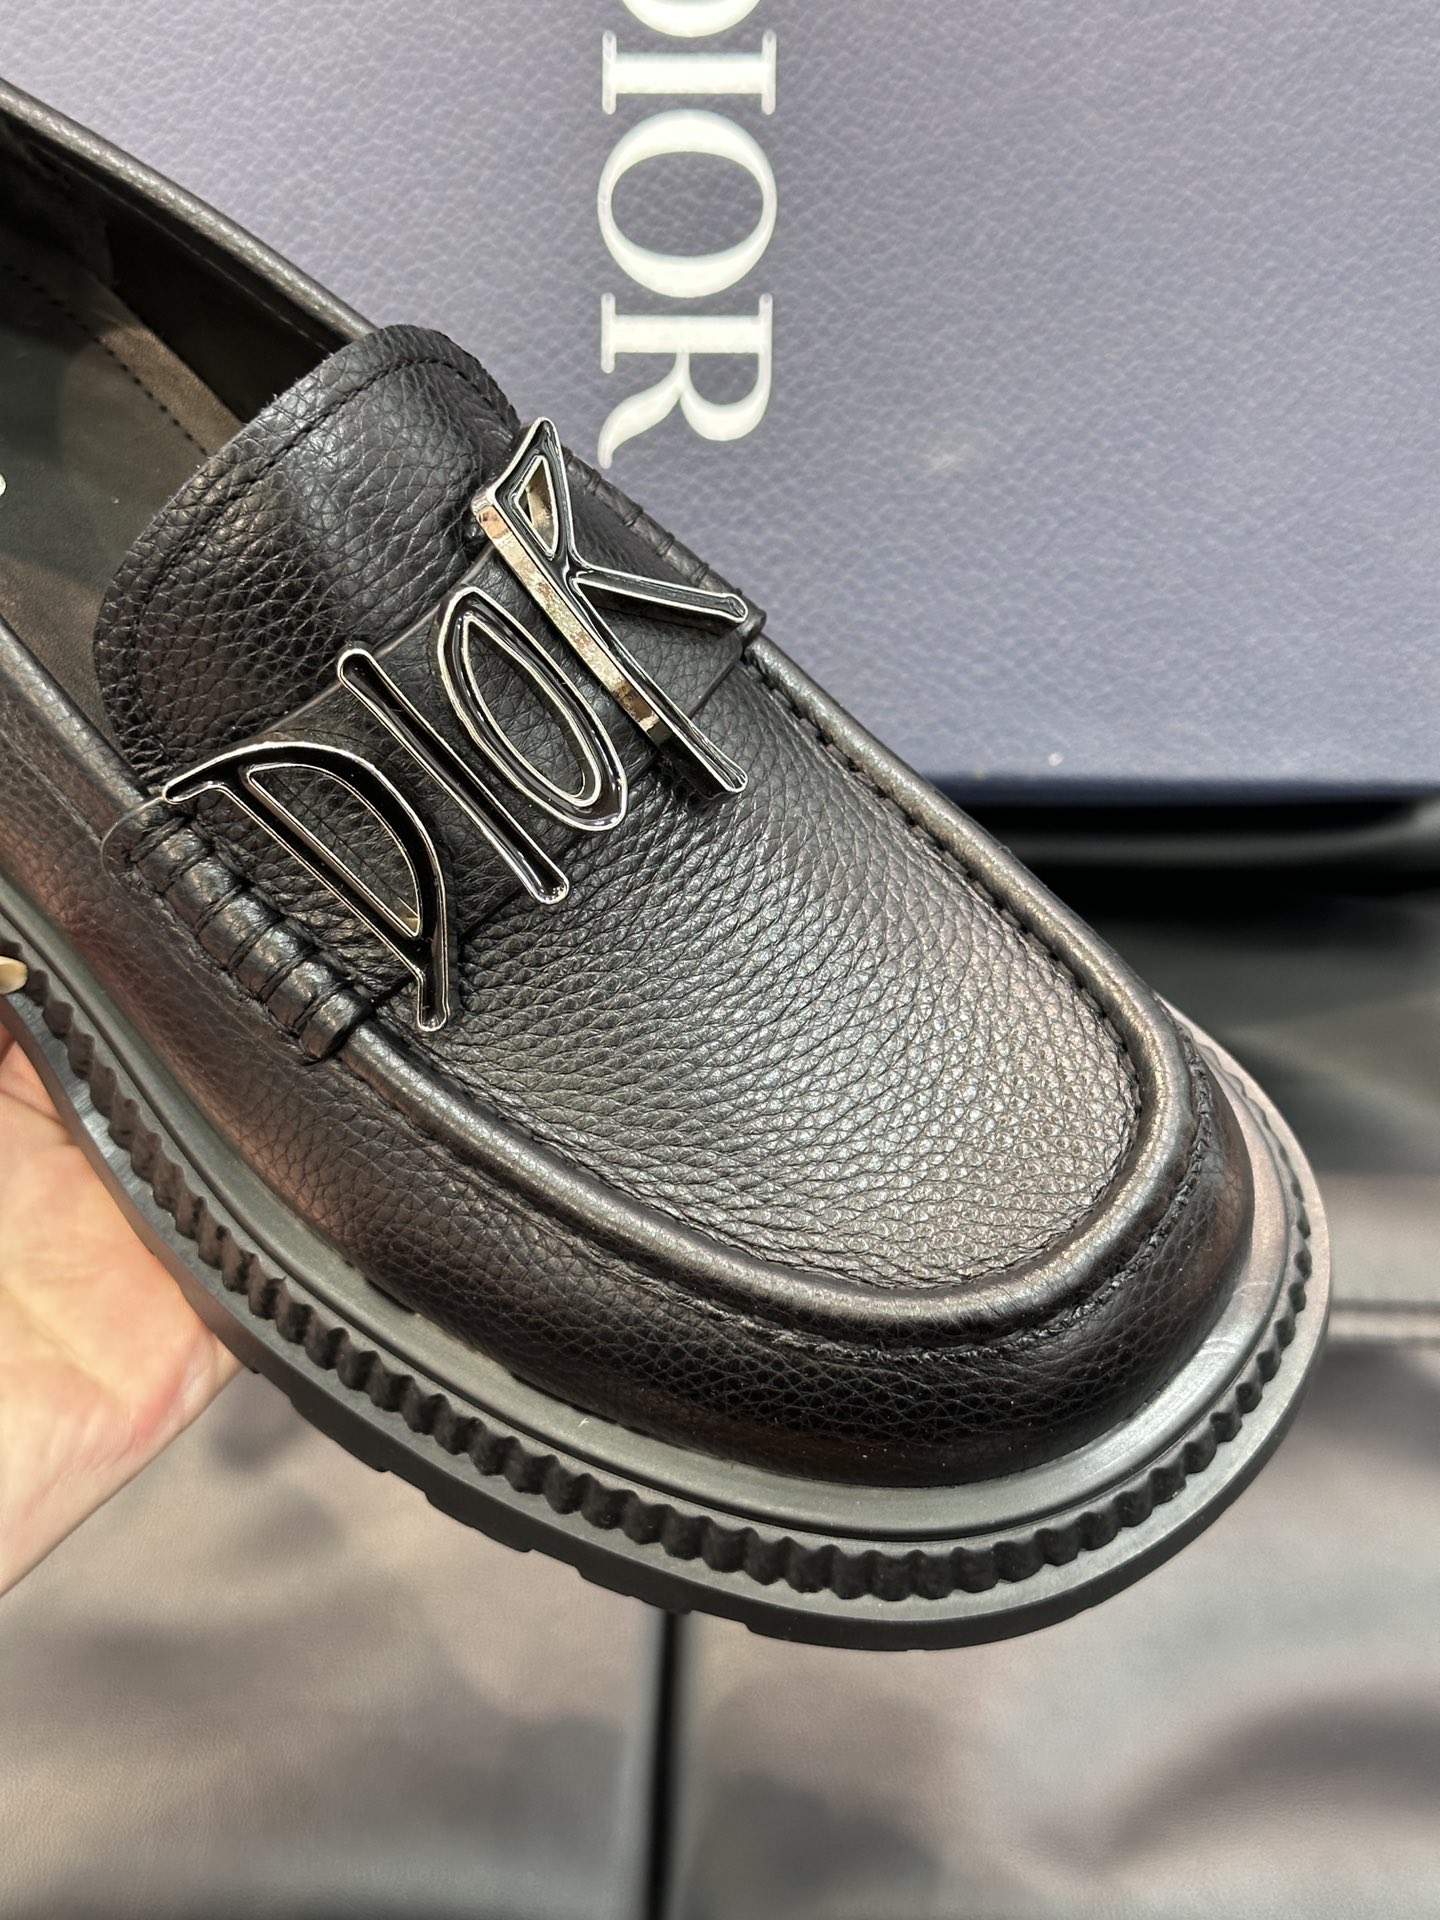 ️️Dr男士经典乐福皮鞋将经典的鞋履款式与复古的加州风格融为一体便鞋款式设计方便穿脱采用进口牛皮精心制作